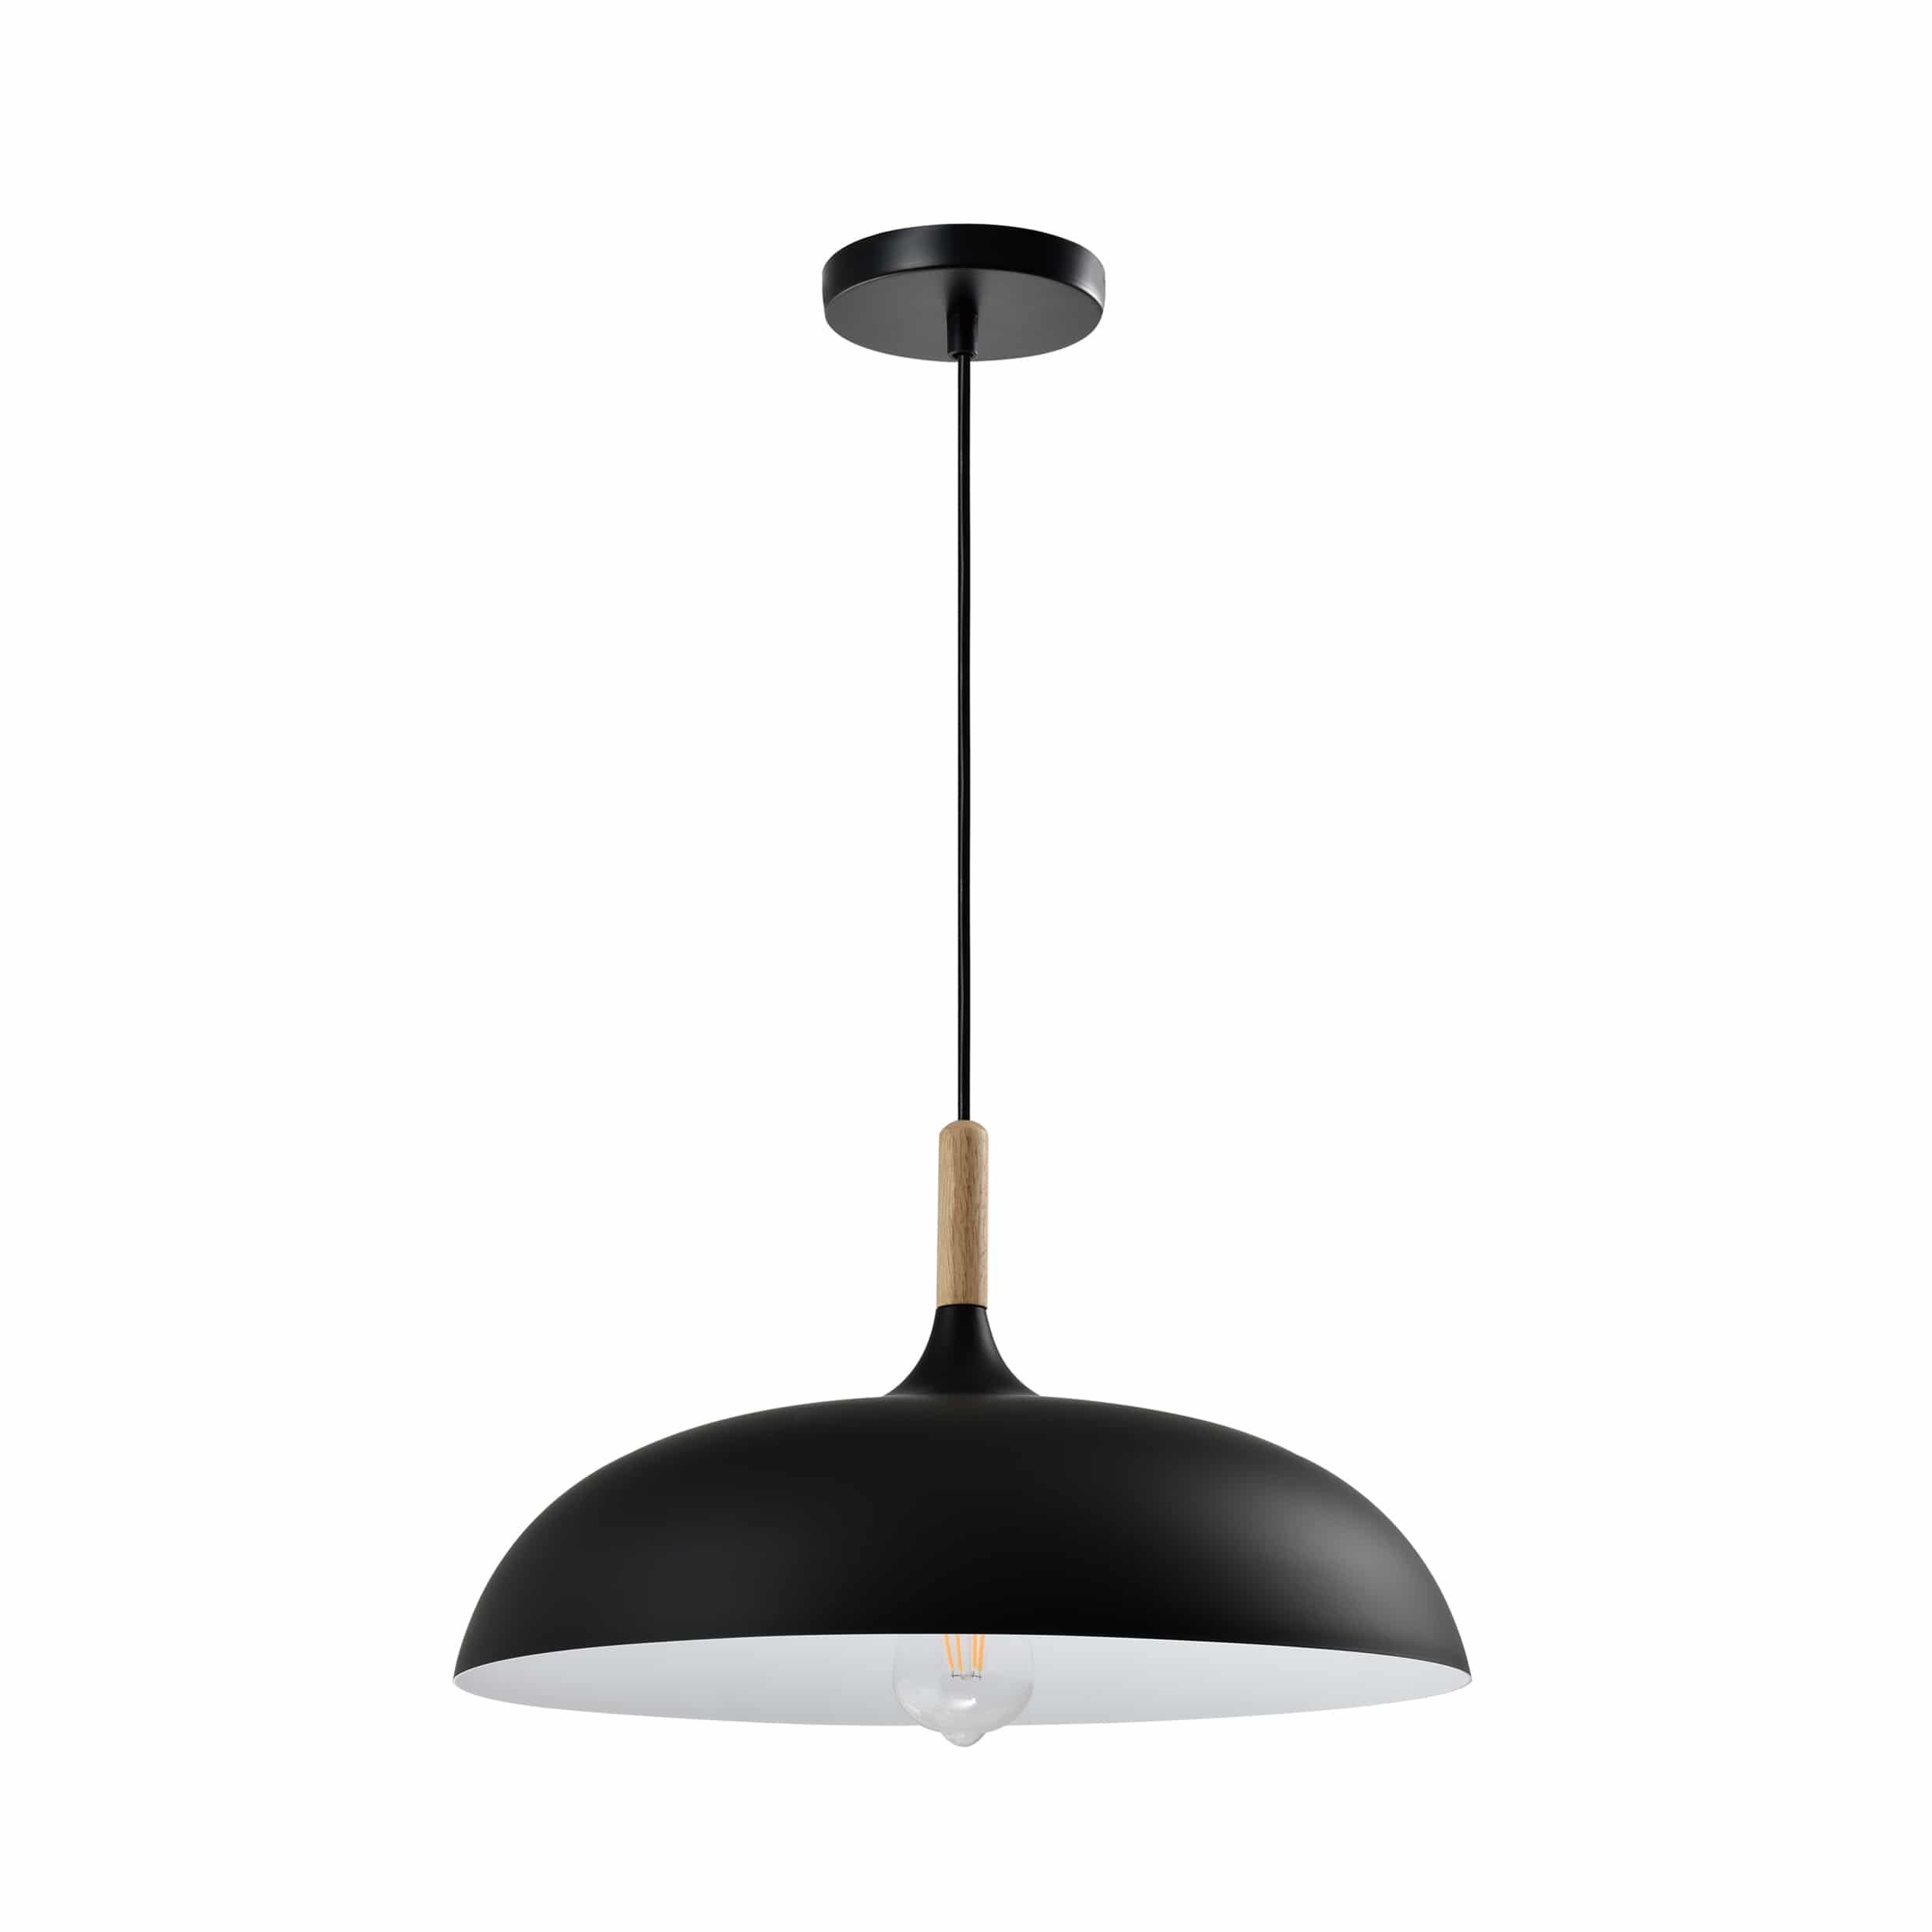 Rustiek ronde vorm hanglamp in het zwart